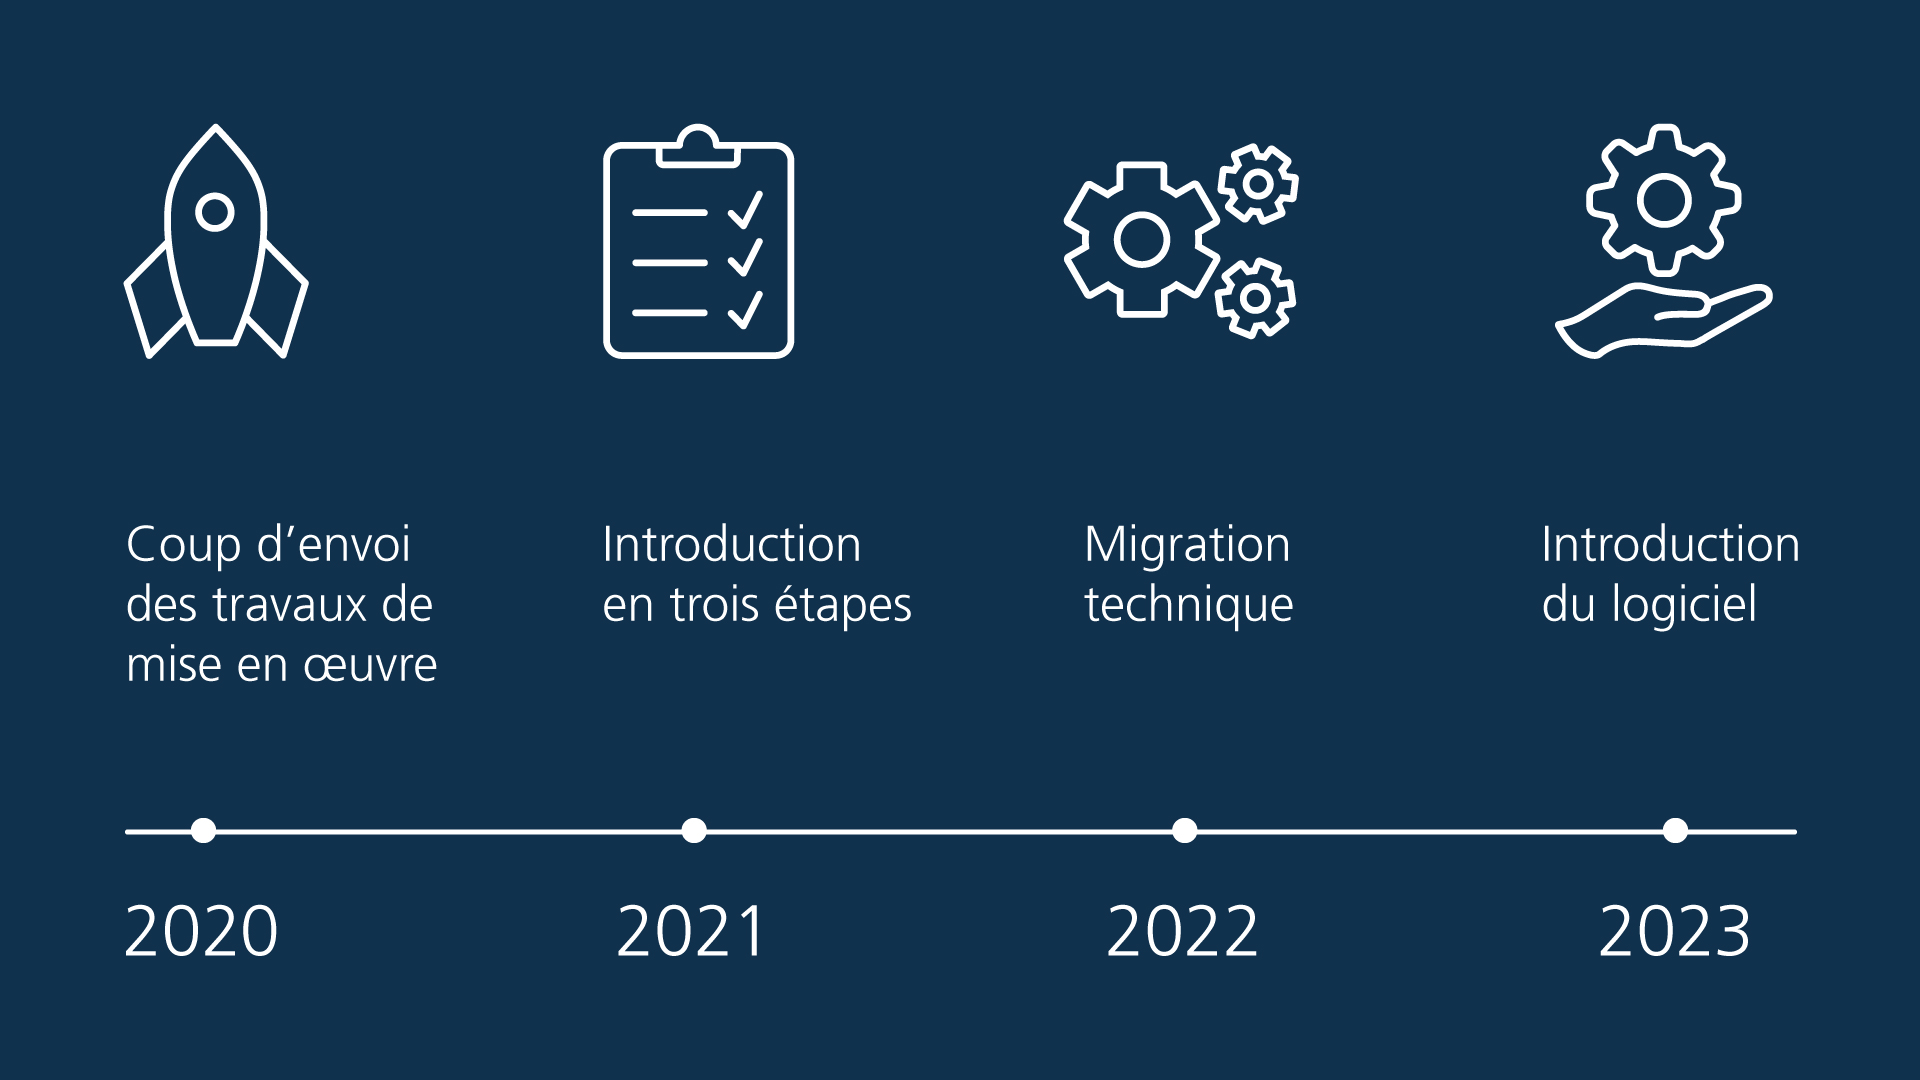 Chronologie des étapes clés du projet : coup d’envoi des travaux de mise en œuvre (2020), plan d’introduction en trois étapes (2021), migration technique (2022) et introduction du logiciel (2023).